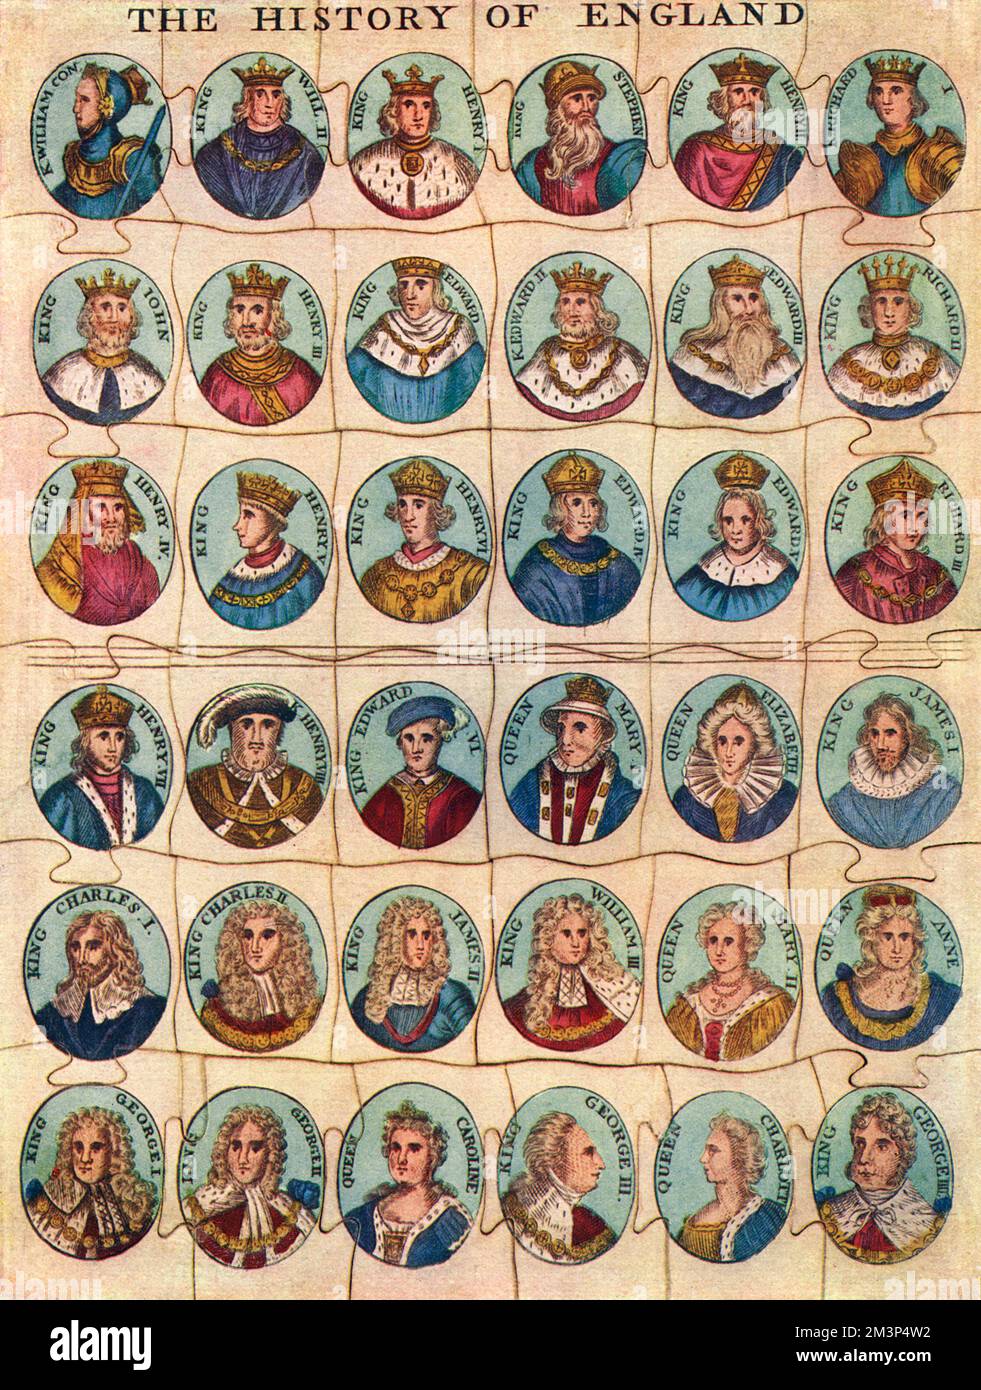 Ein sehr lehrreiches Puzzle aus dem frühen 19. Jahrhundert, mit Darstellungen der Könige und Königinnen von England von William I bis George IV Datum: 1937 Stockfoto